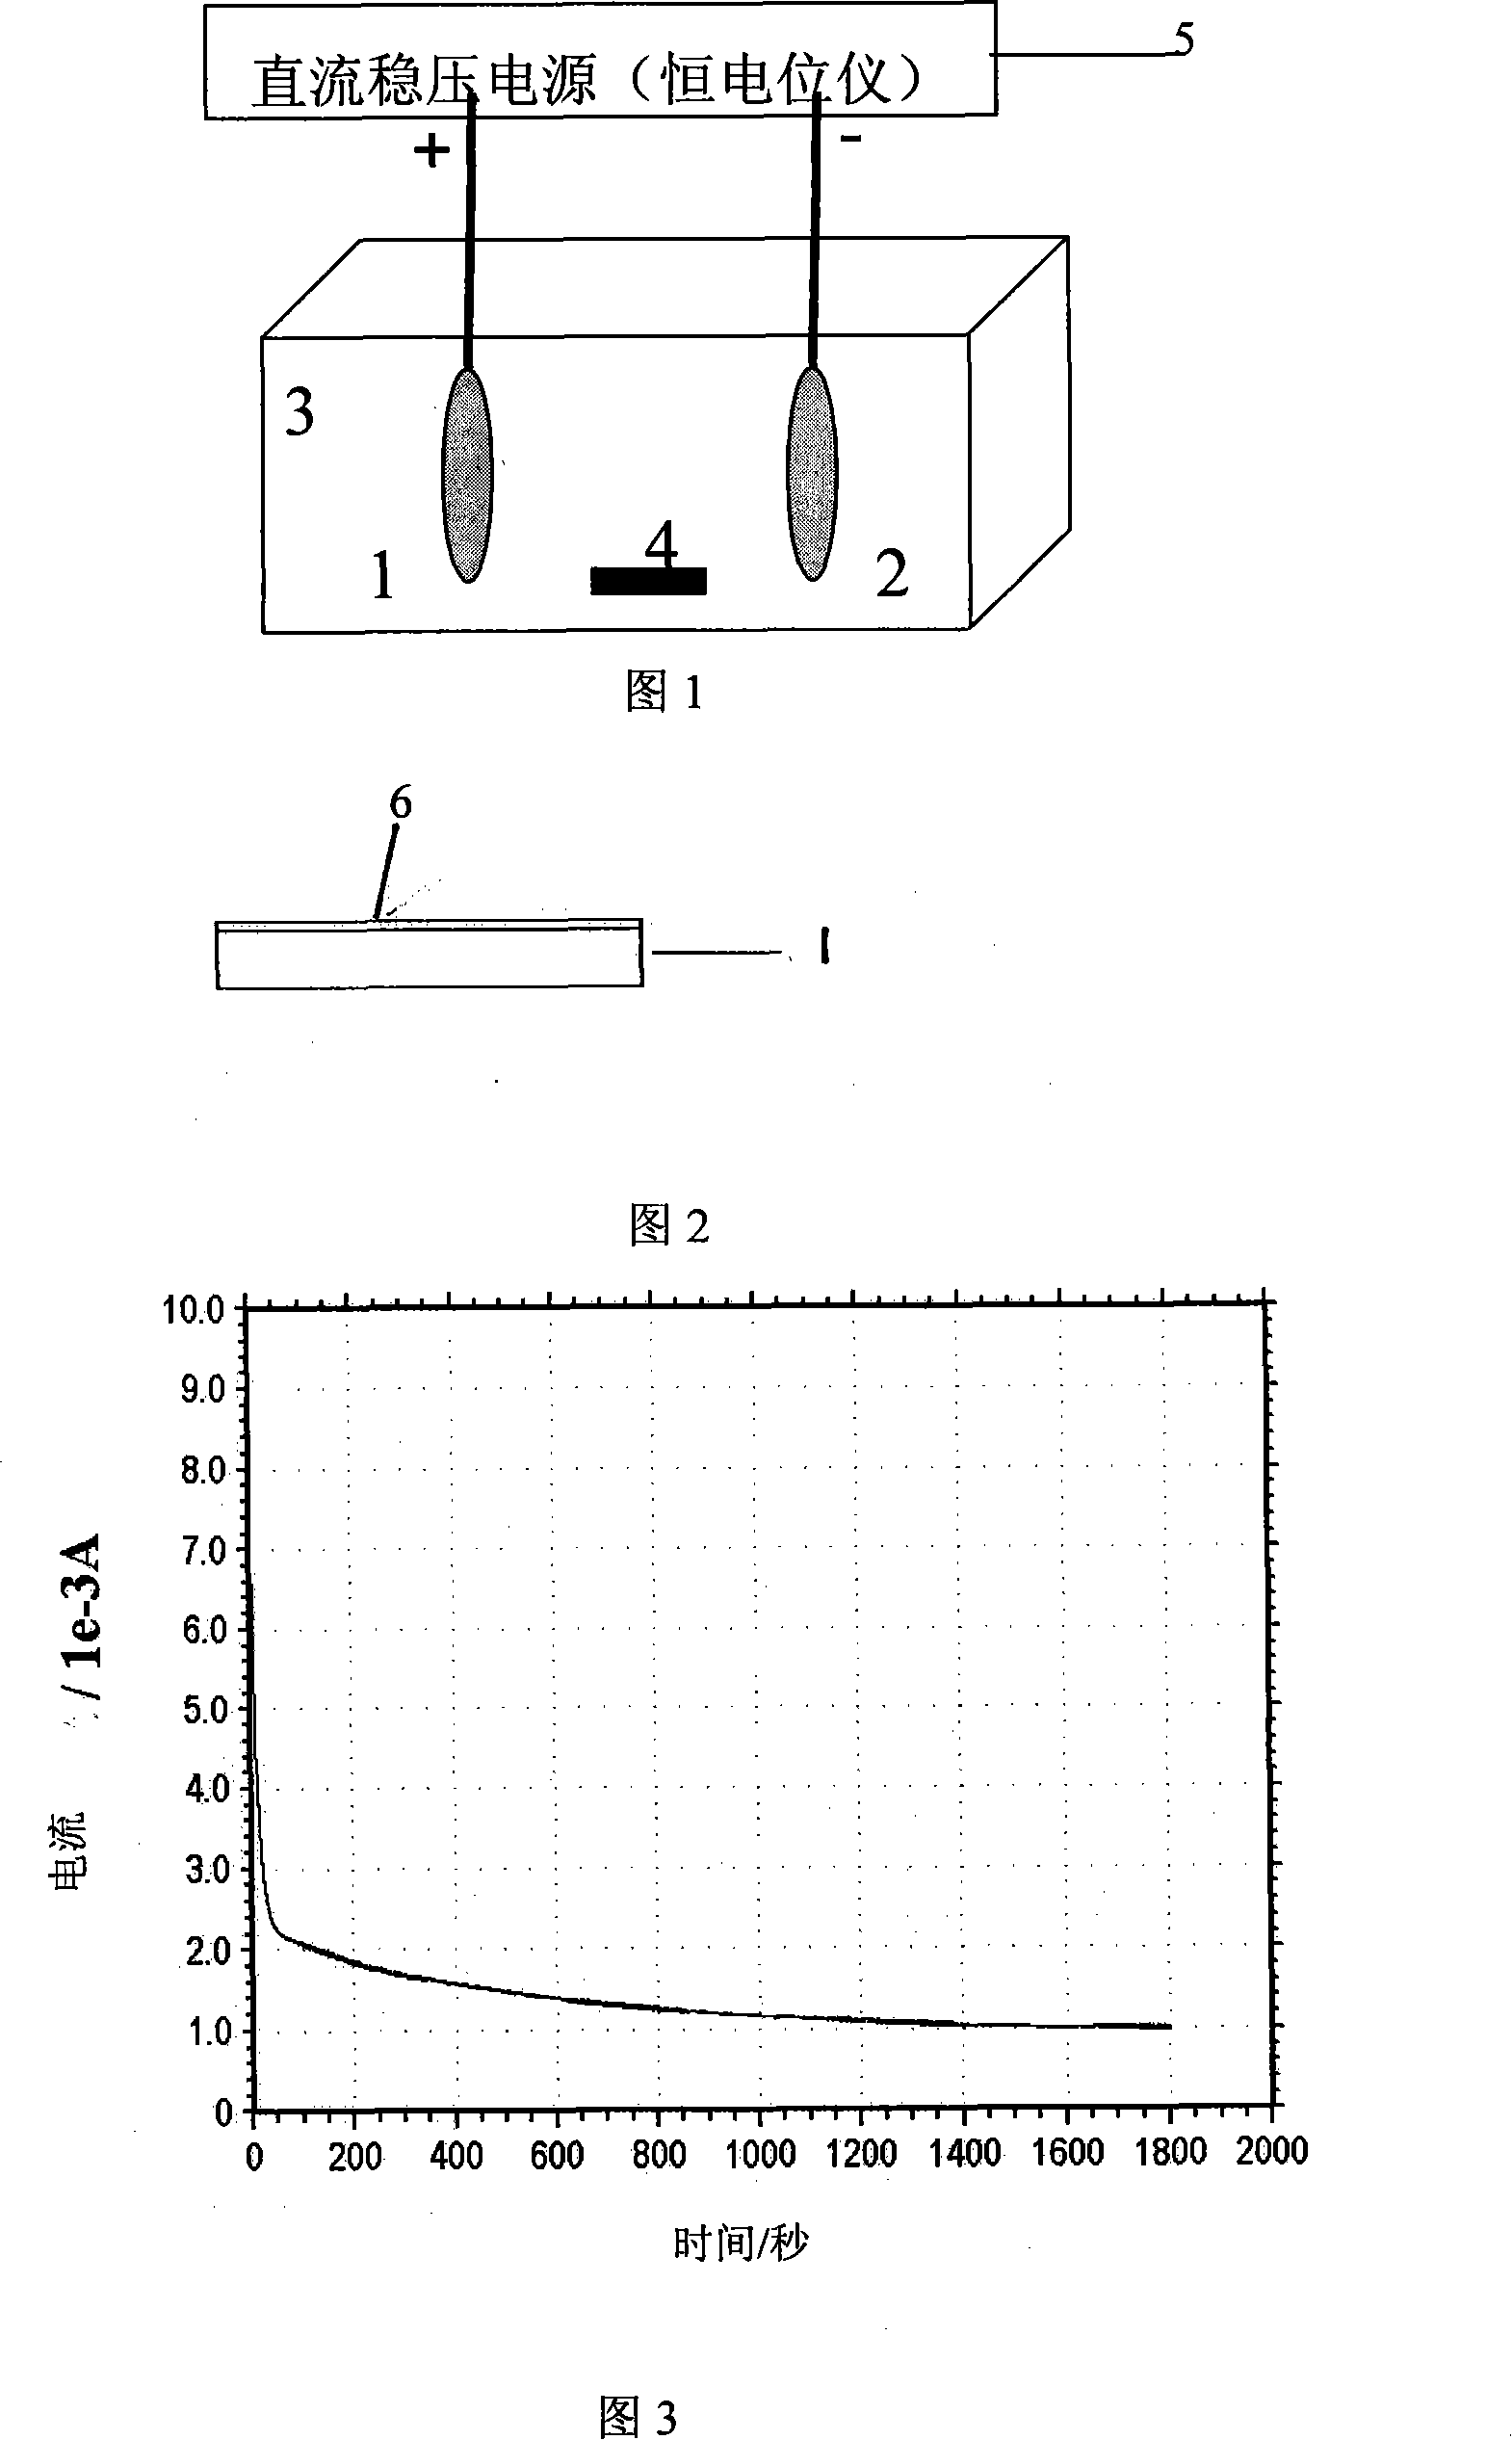 Method for producing titanium nitride membrane at room temperature